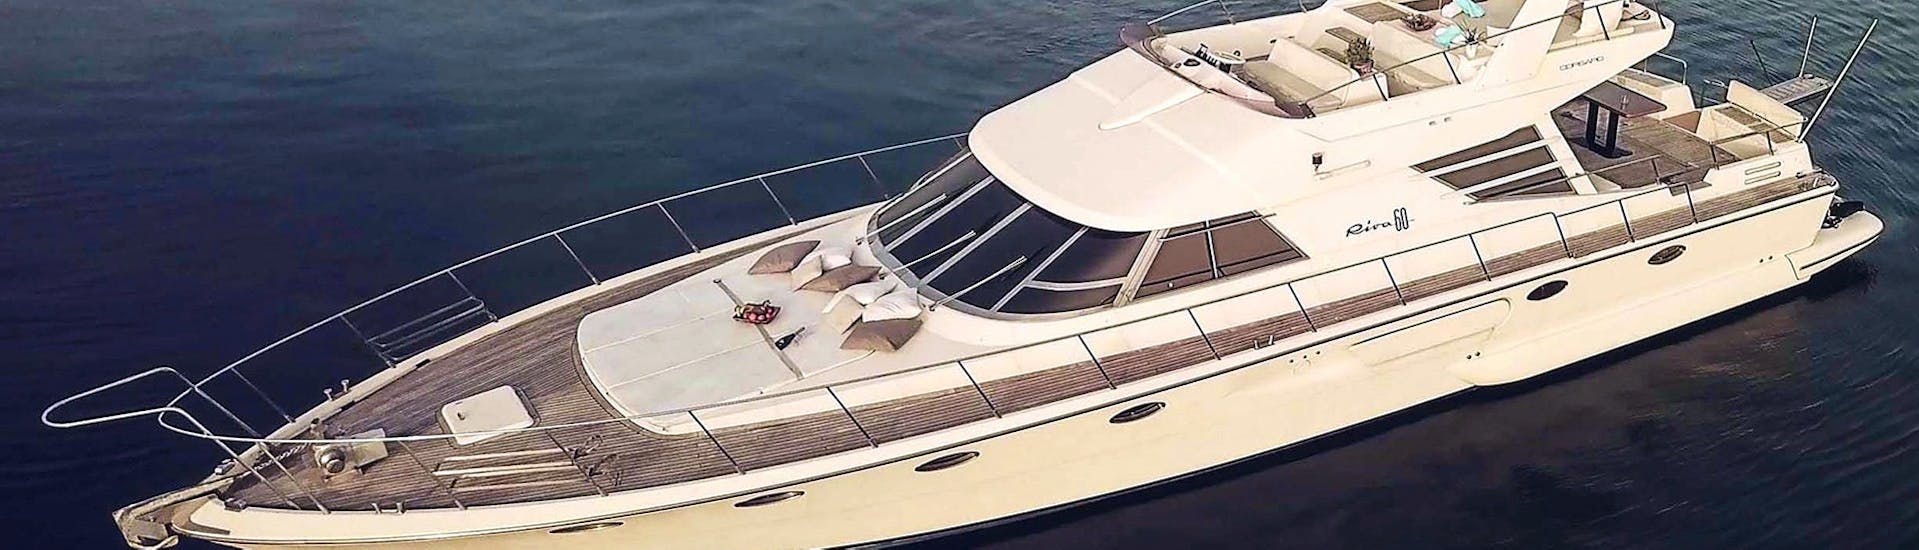 The luxurious INDIGO yacht in the private luxury yacht trip around Milos, Kimolos and Polyaigos with Indigo Yacht Milos.